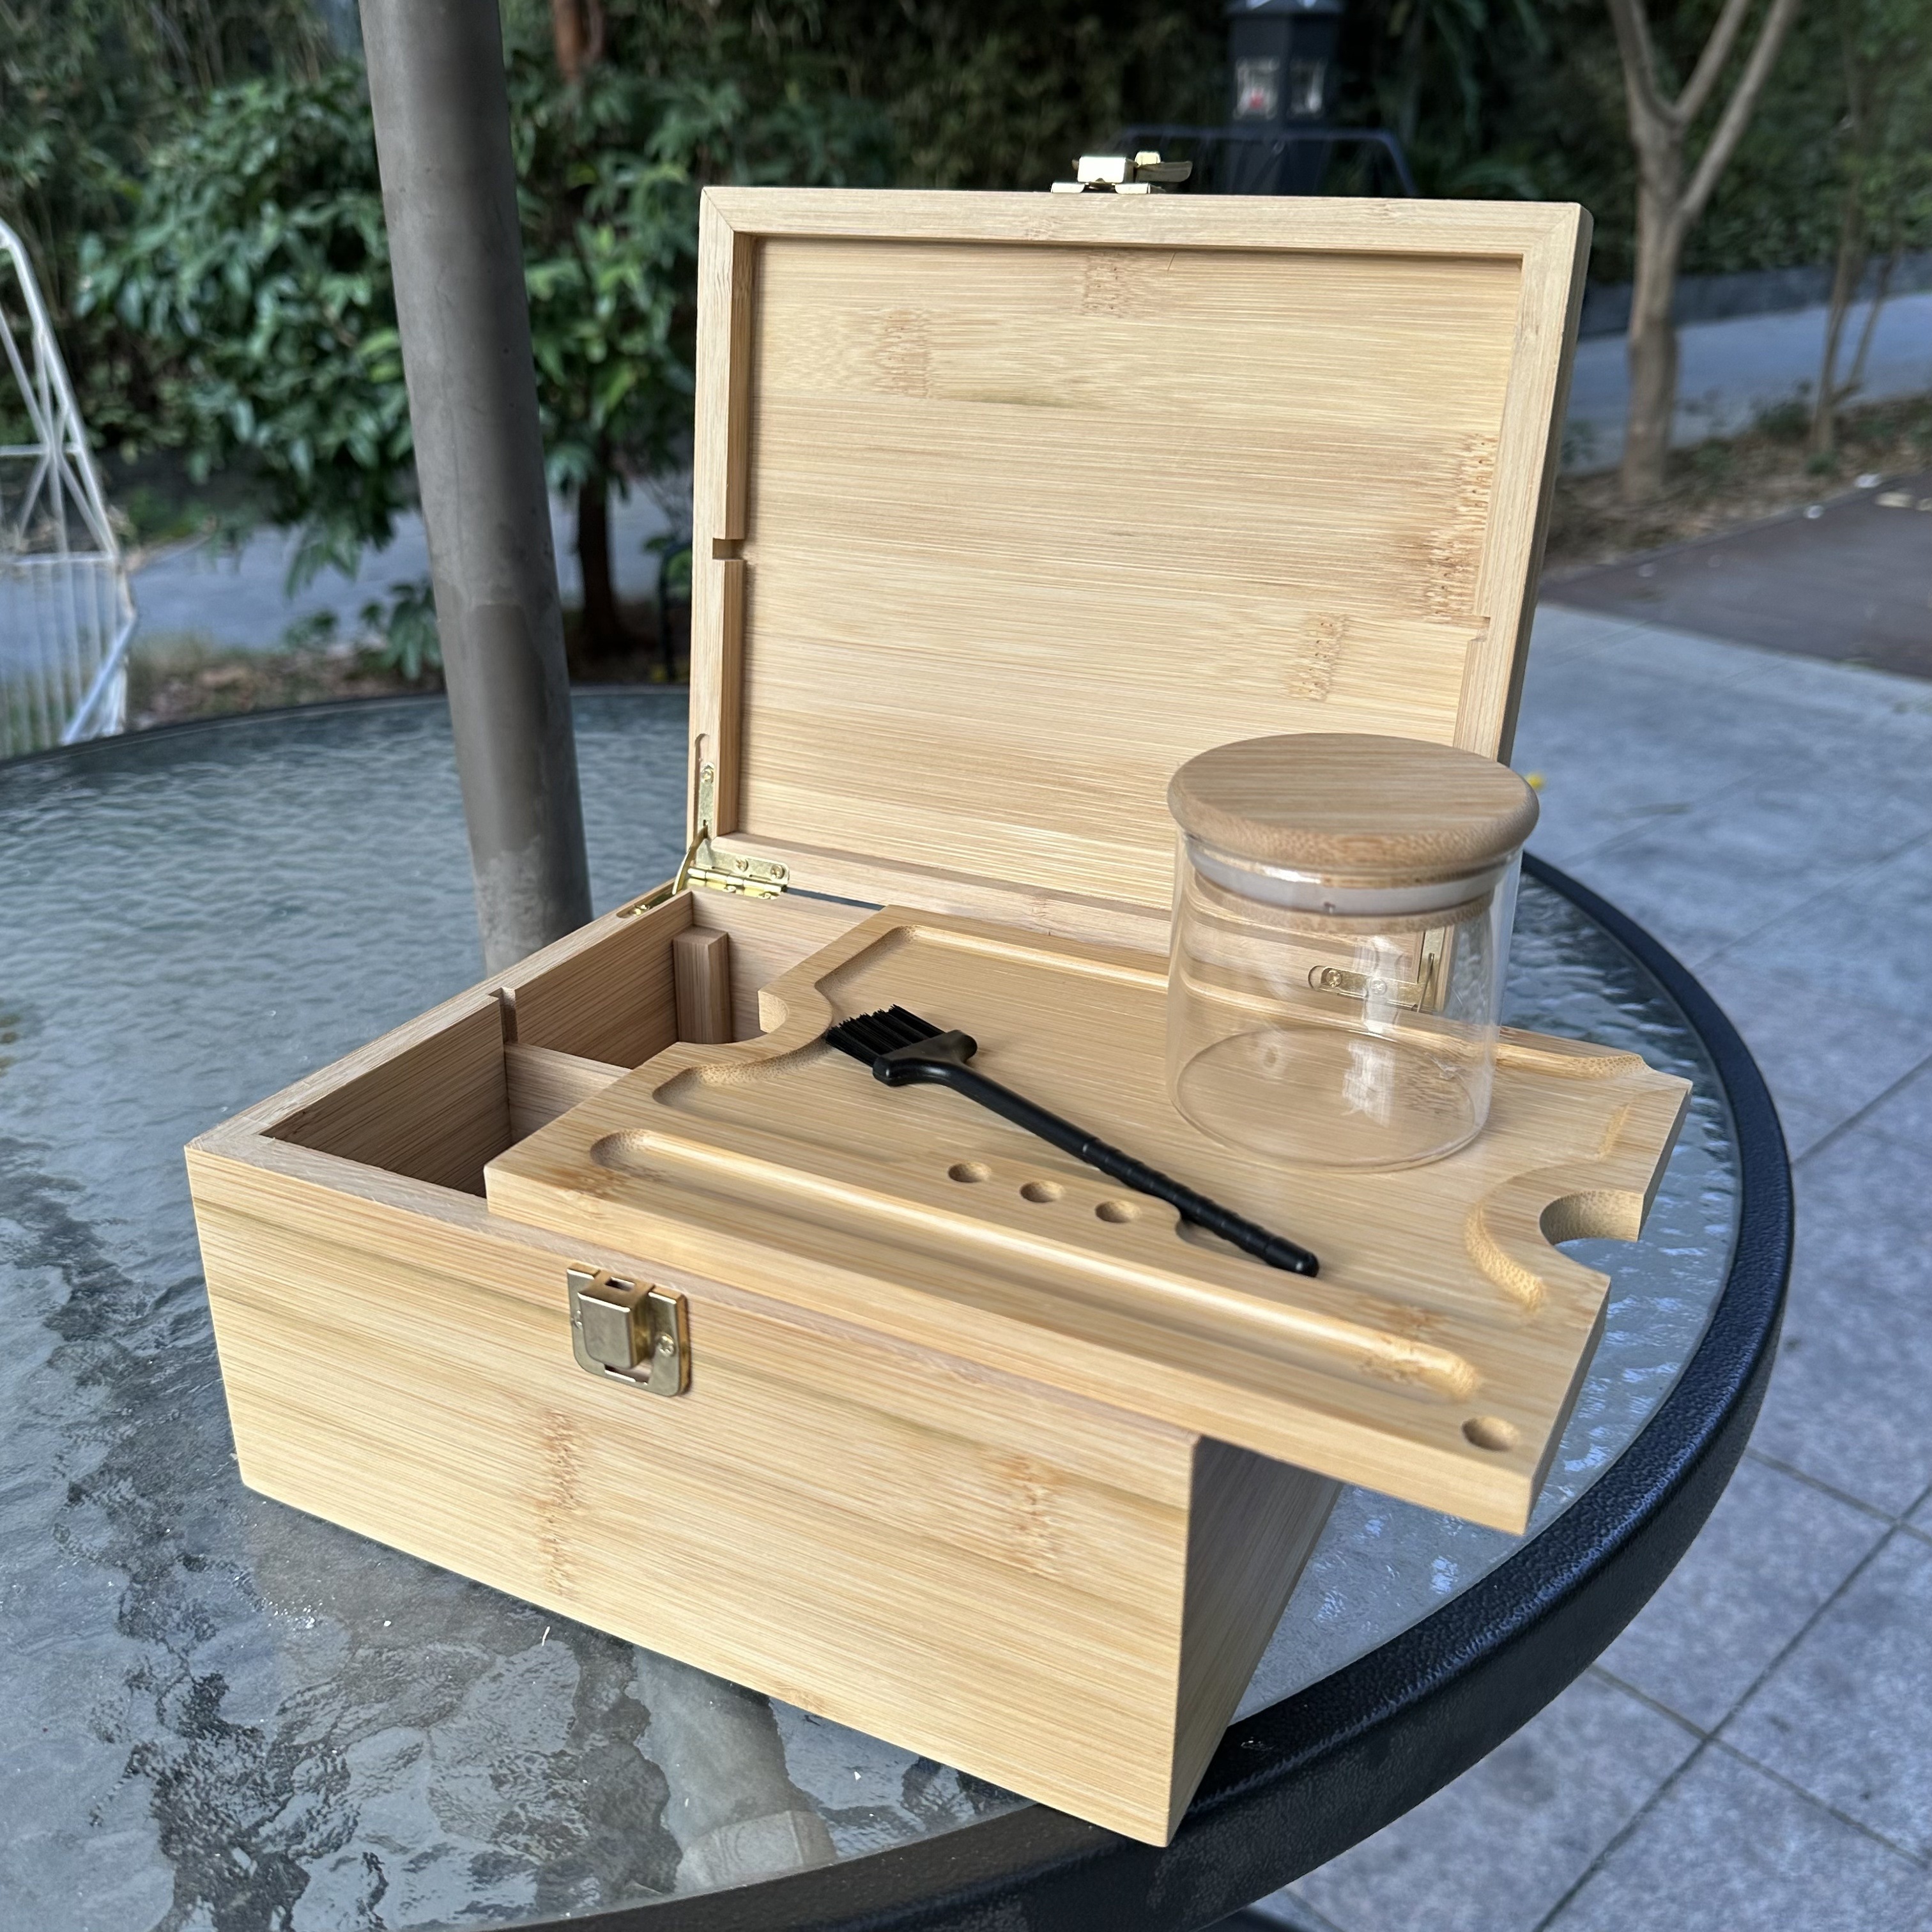 Las mejores ofertas en Caja de puros de madera